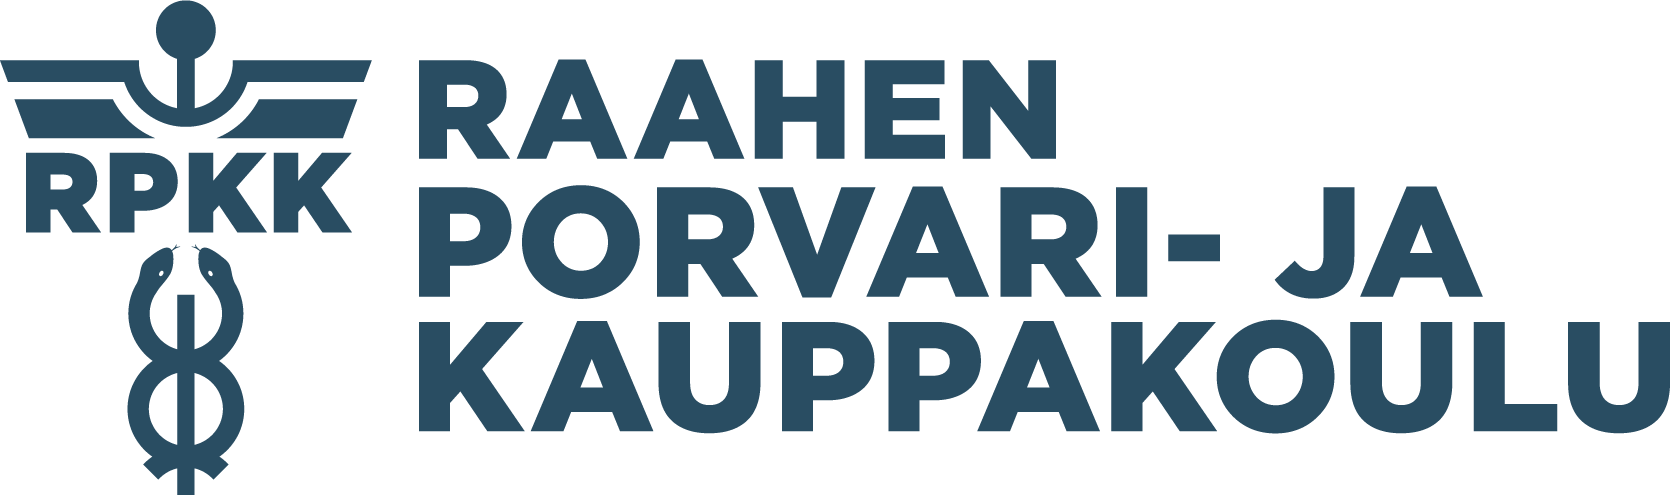 Raahen Porvari- ja Kauppakoulu Logo